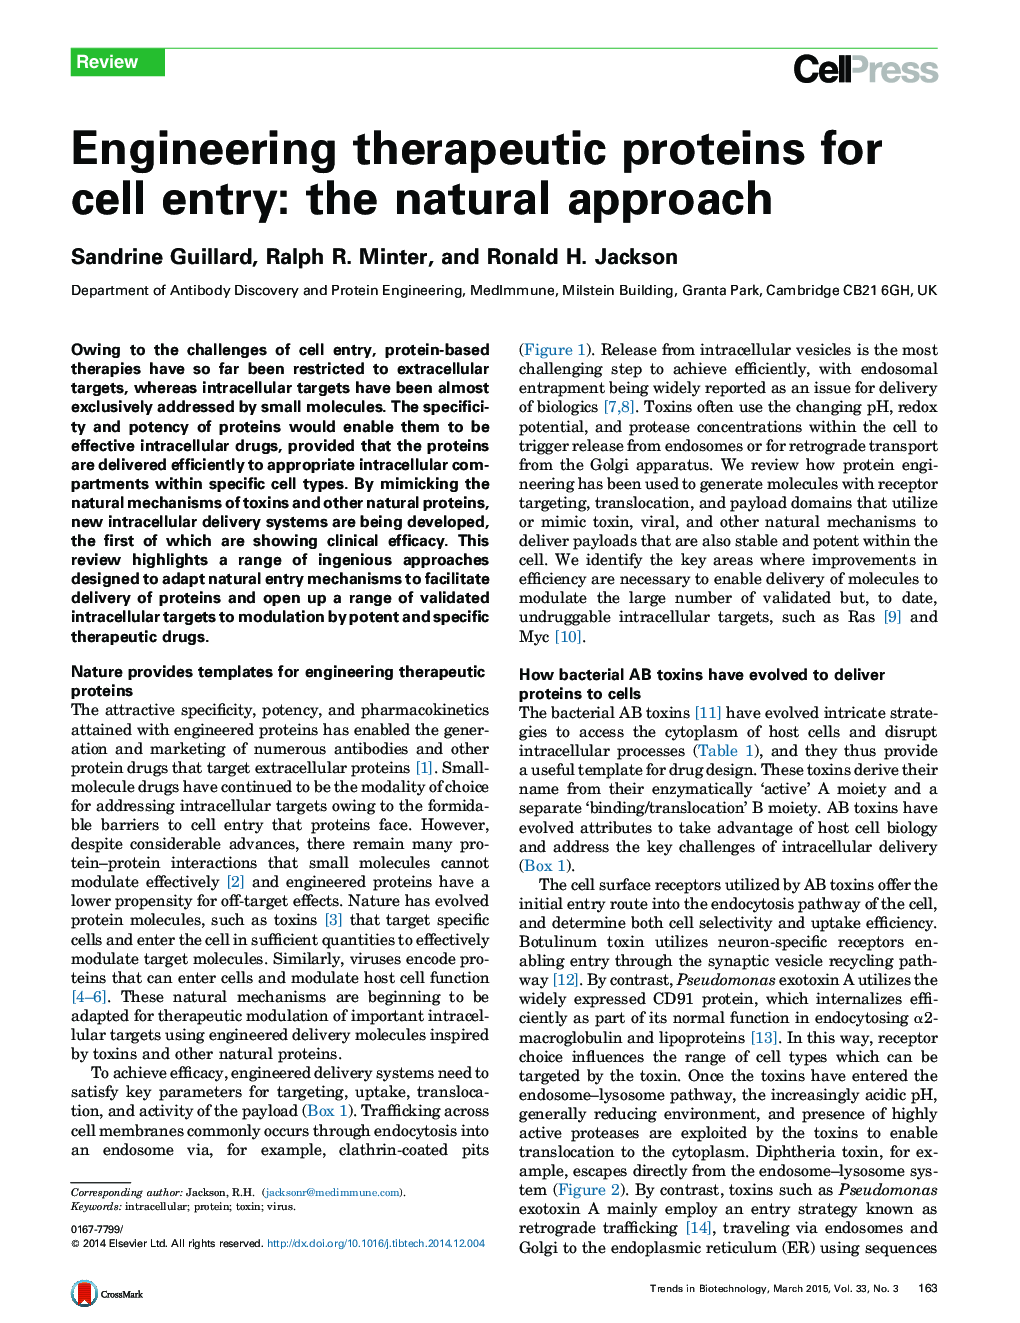 پروتئین های درمانی برای ورود سلول: رویکرد طبیعی 